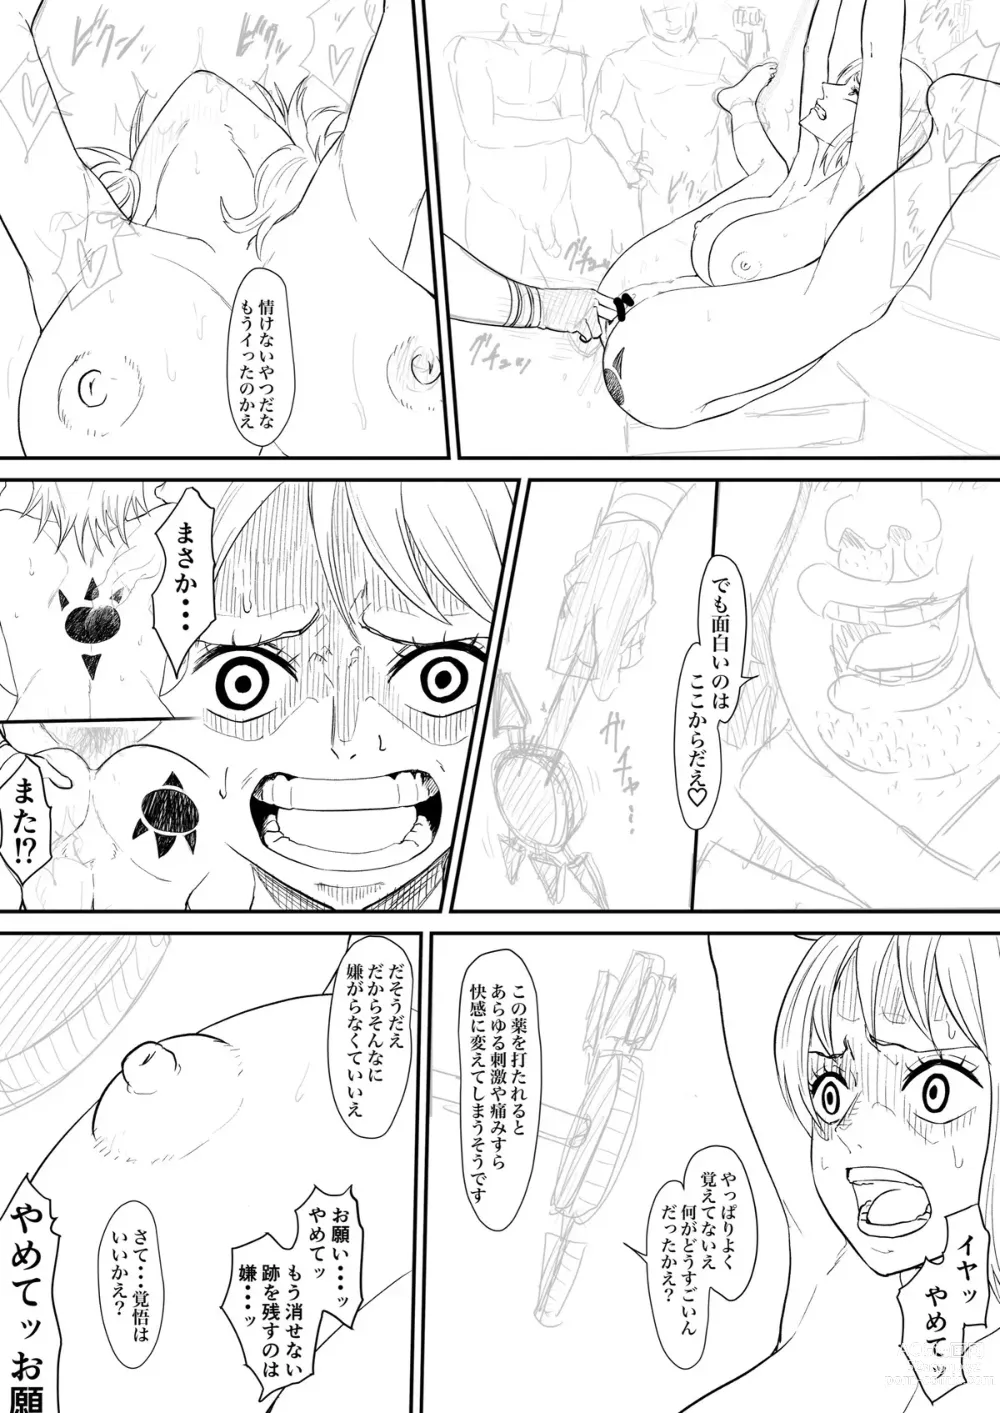 Page 12 of doujinshi Nami Manga + various bonus